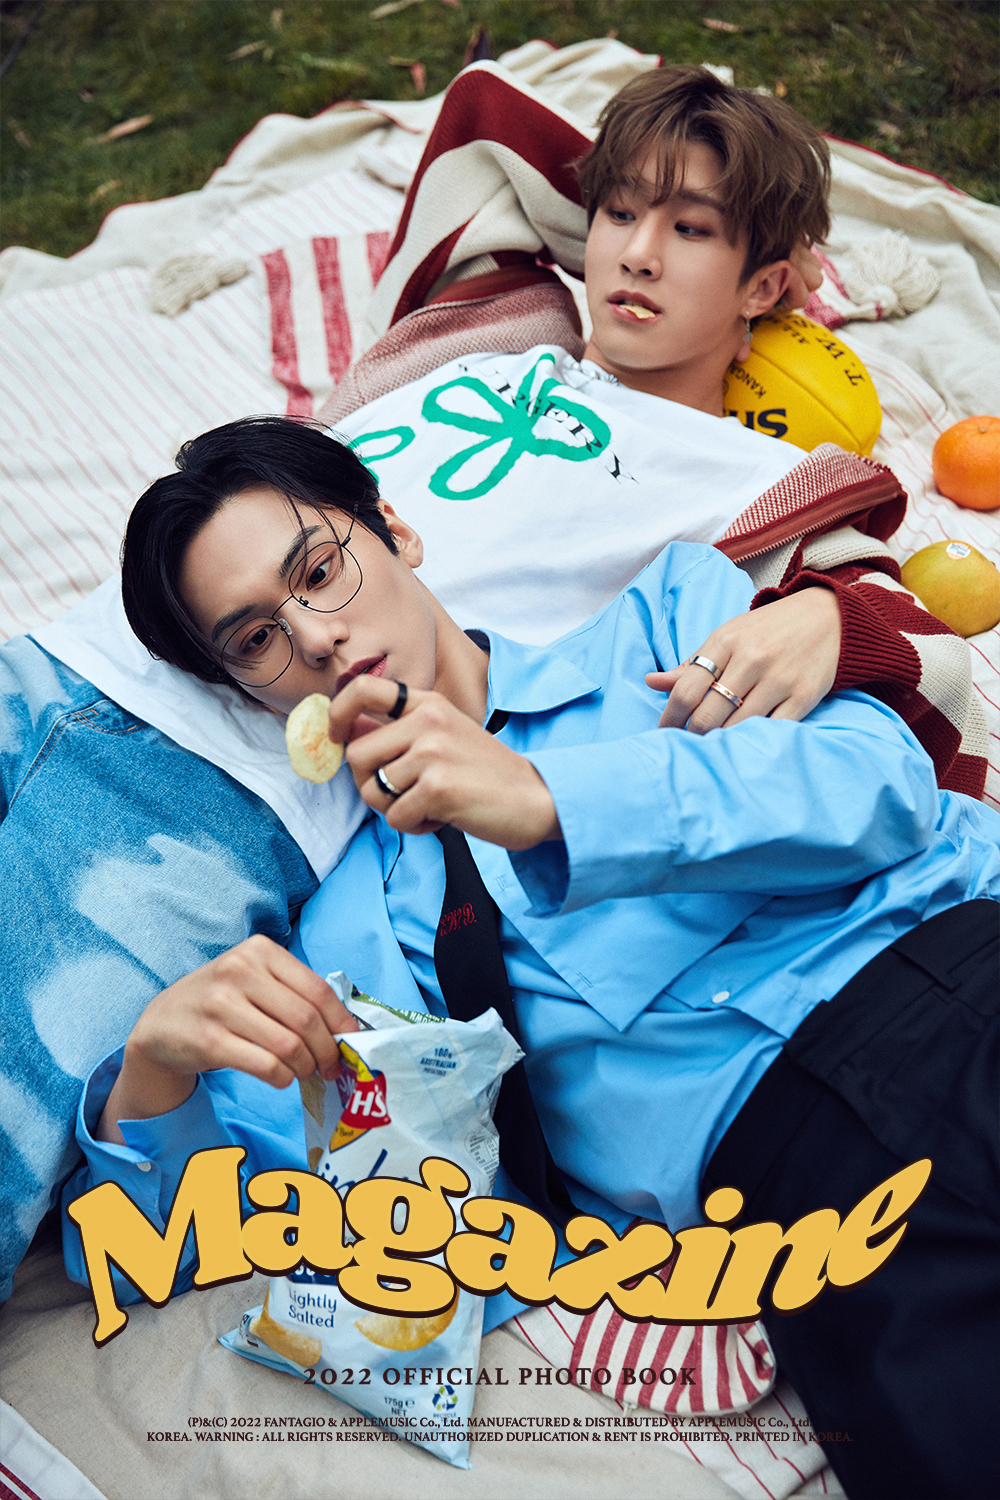 Jinjin & Rocky, 'Hip & Cool' photobook teaser image released